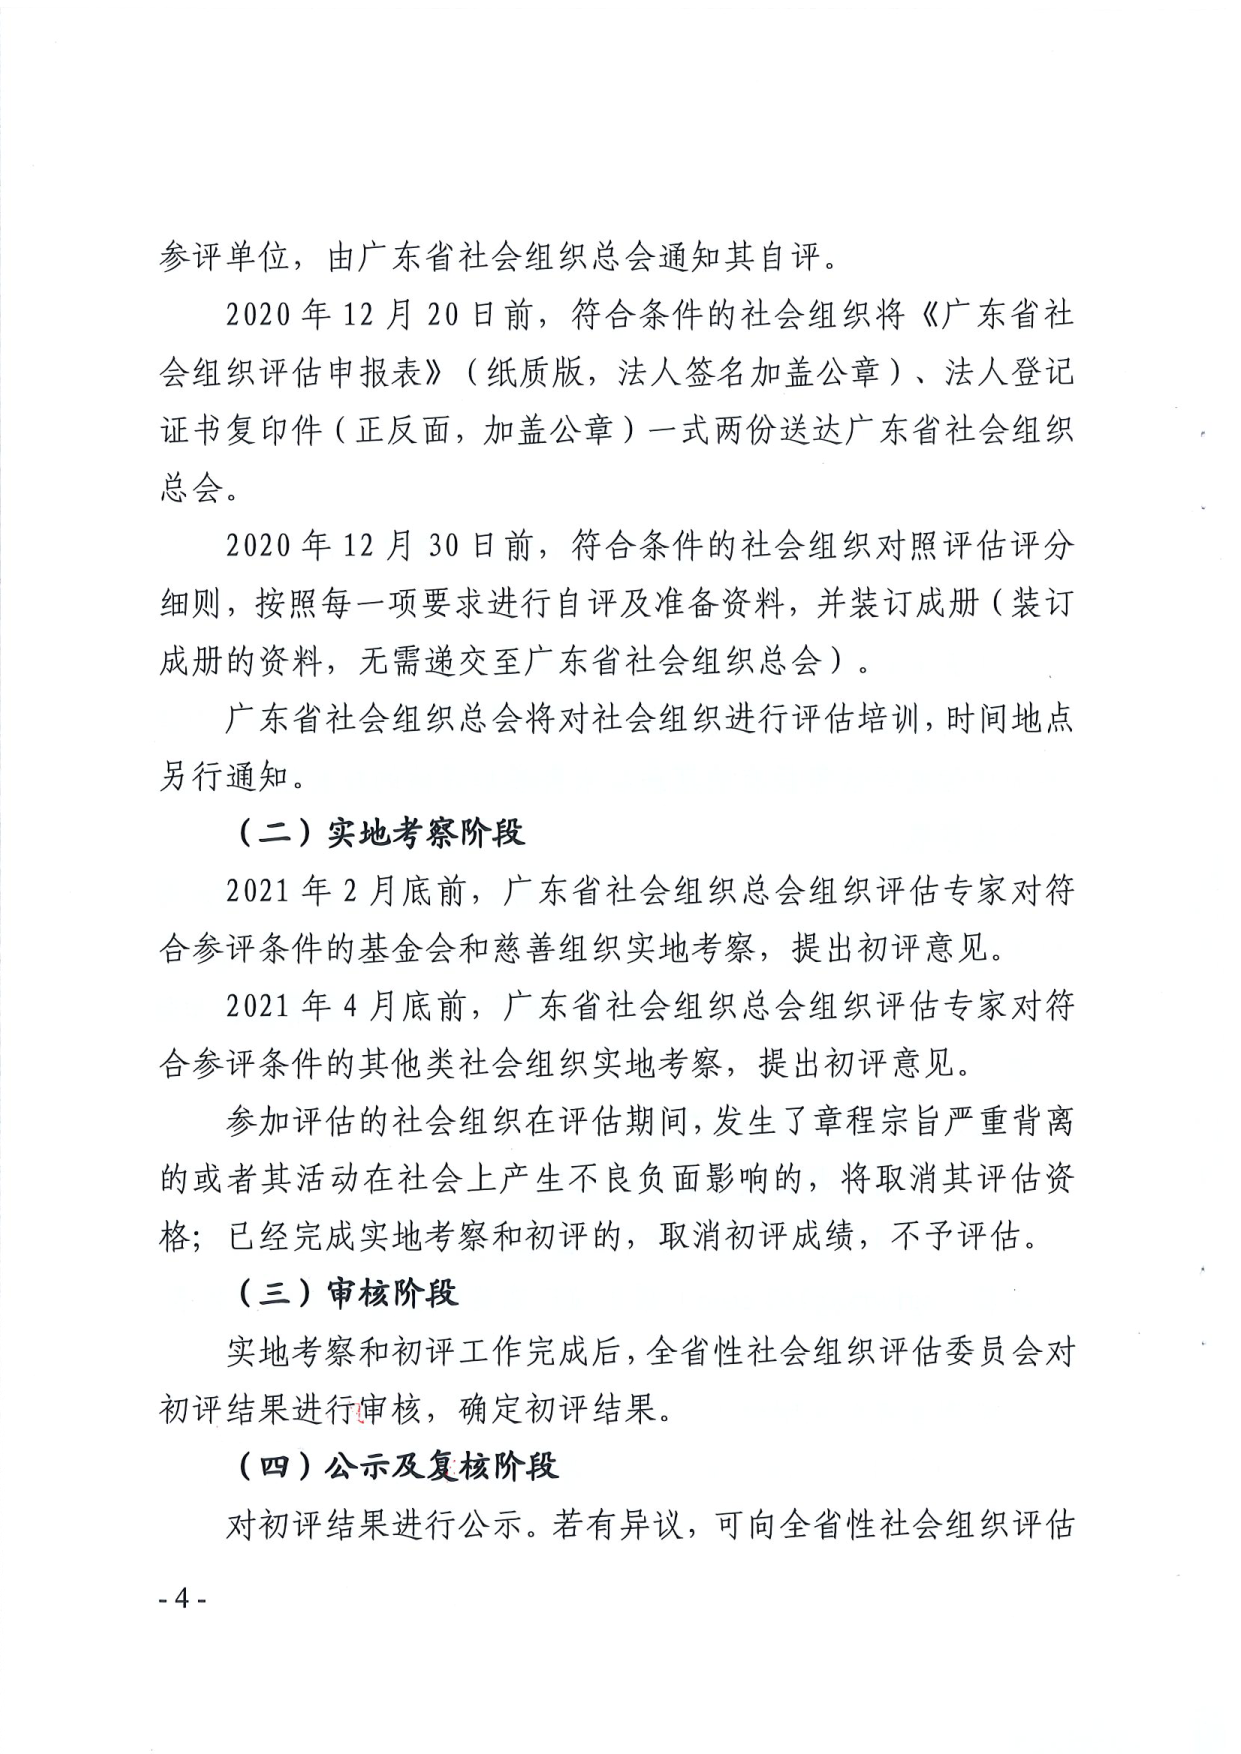 广东省民政厅关于开展2020年度全省性社会组织评估工作的通知_4.png